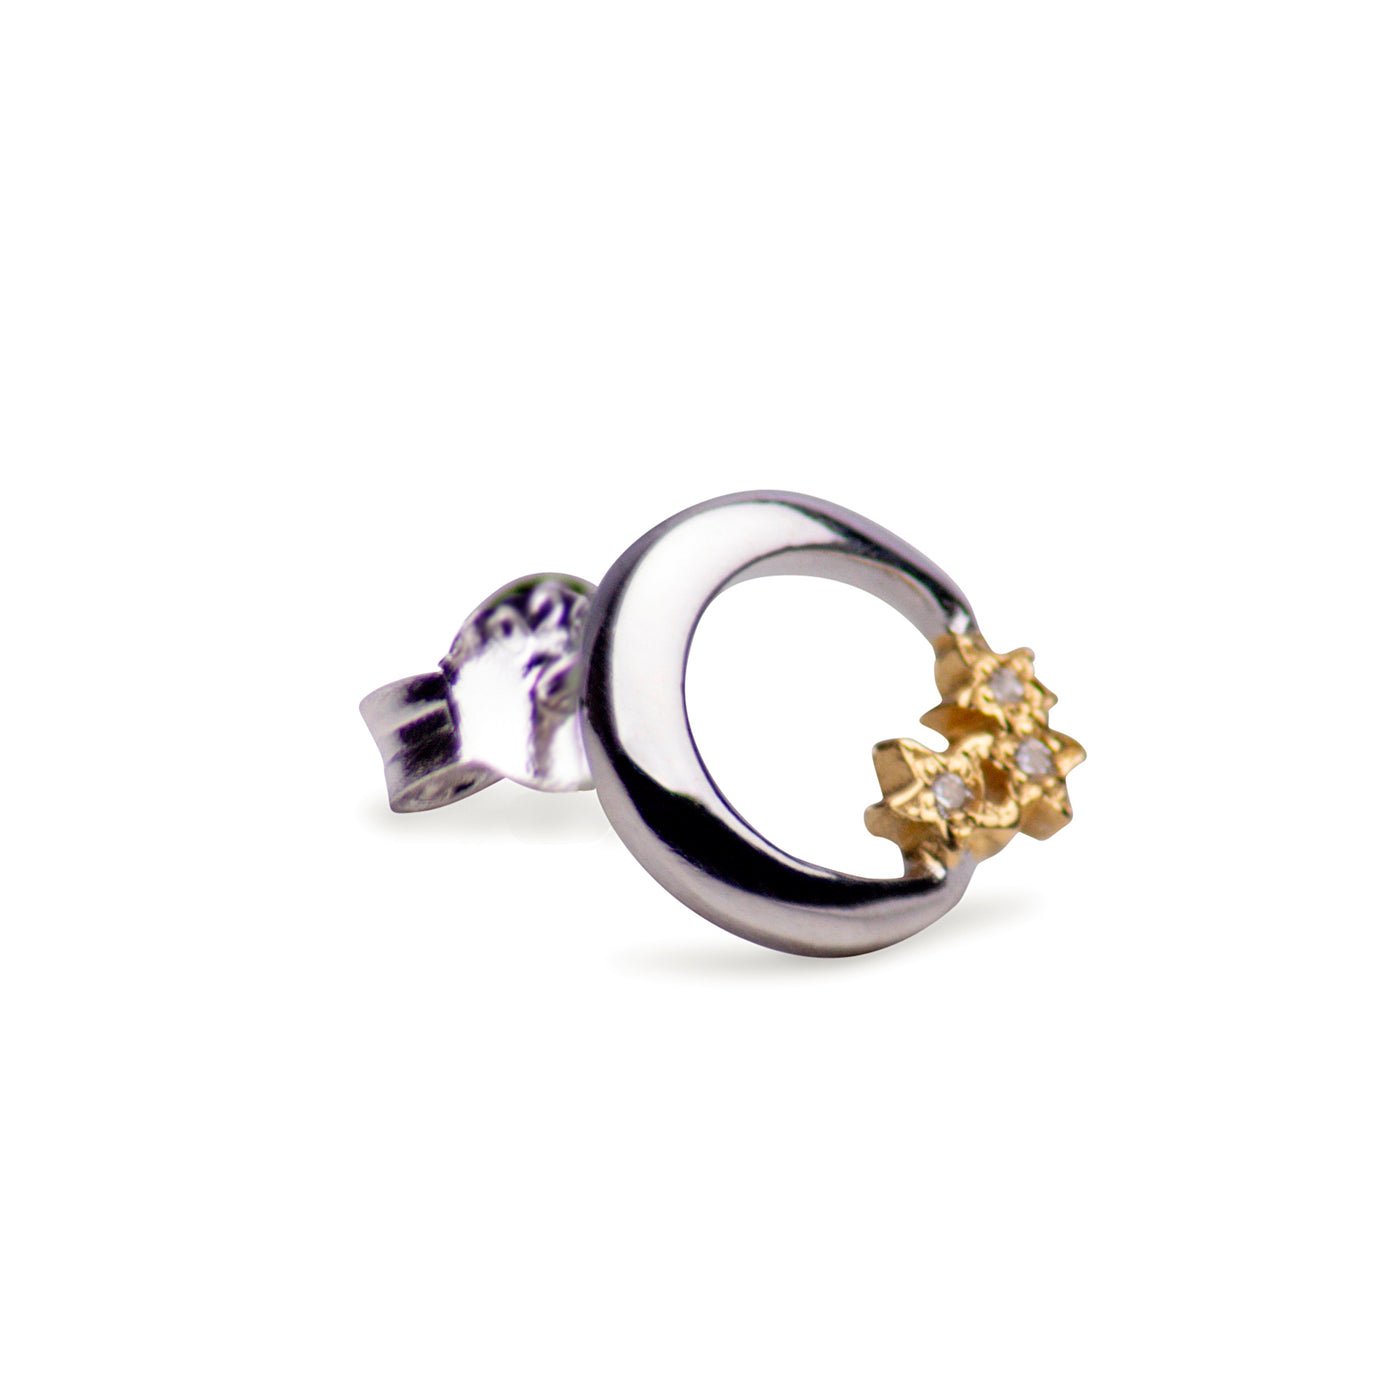 Silver Moon & Gold Star Earrings | SilverAndGold